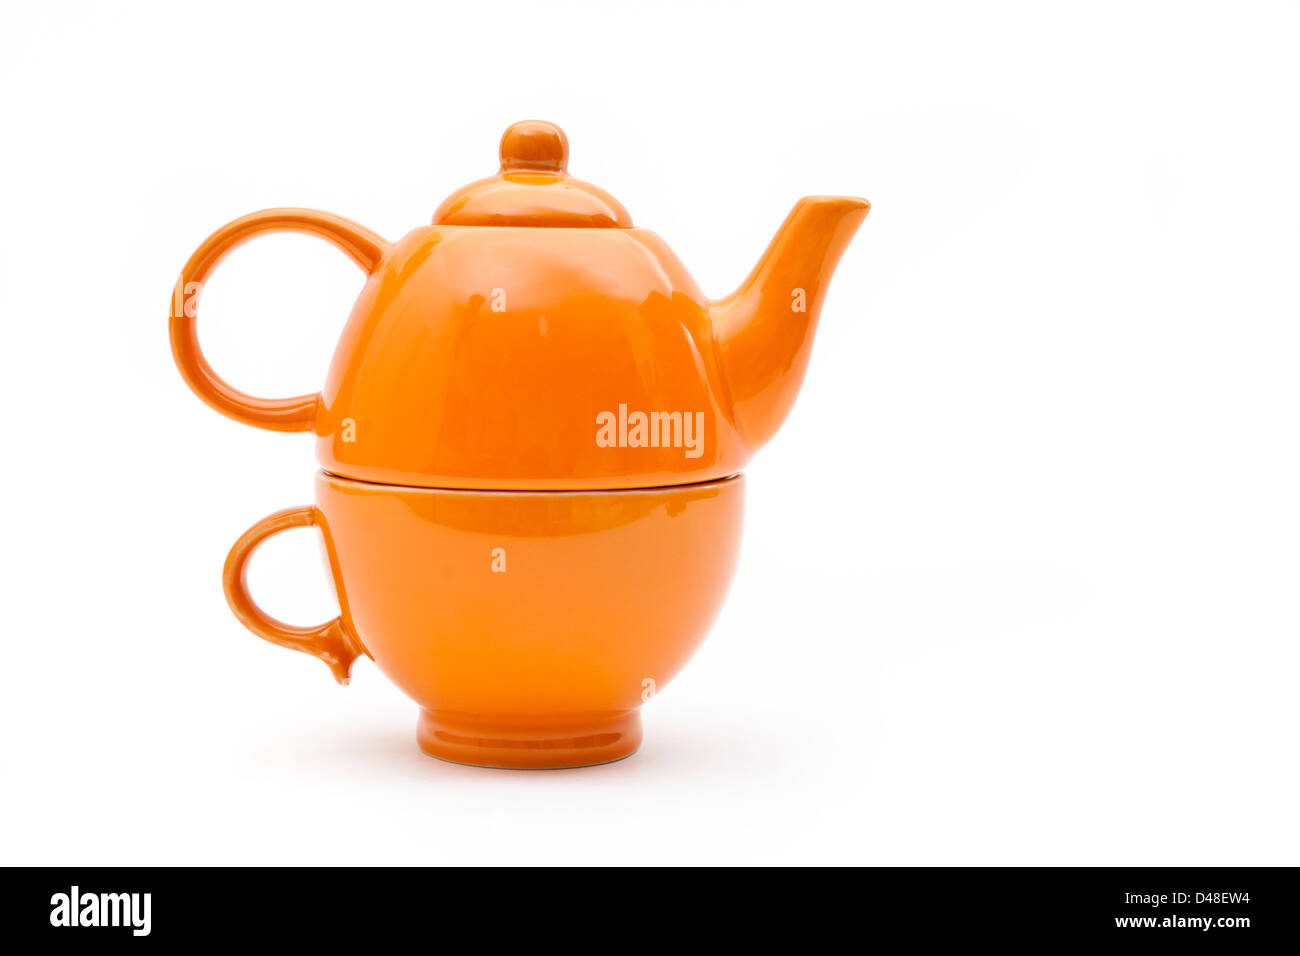 Teaset. Single orange Teekanne und Tasse auf einem weißen Hintergrund. Teekanne konzipiert auf der Schale sitzen. Stockfoto